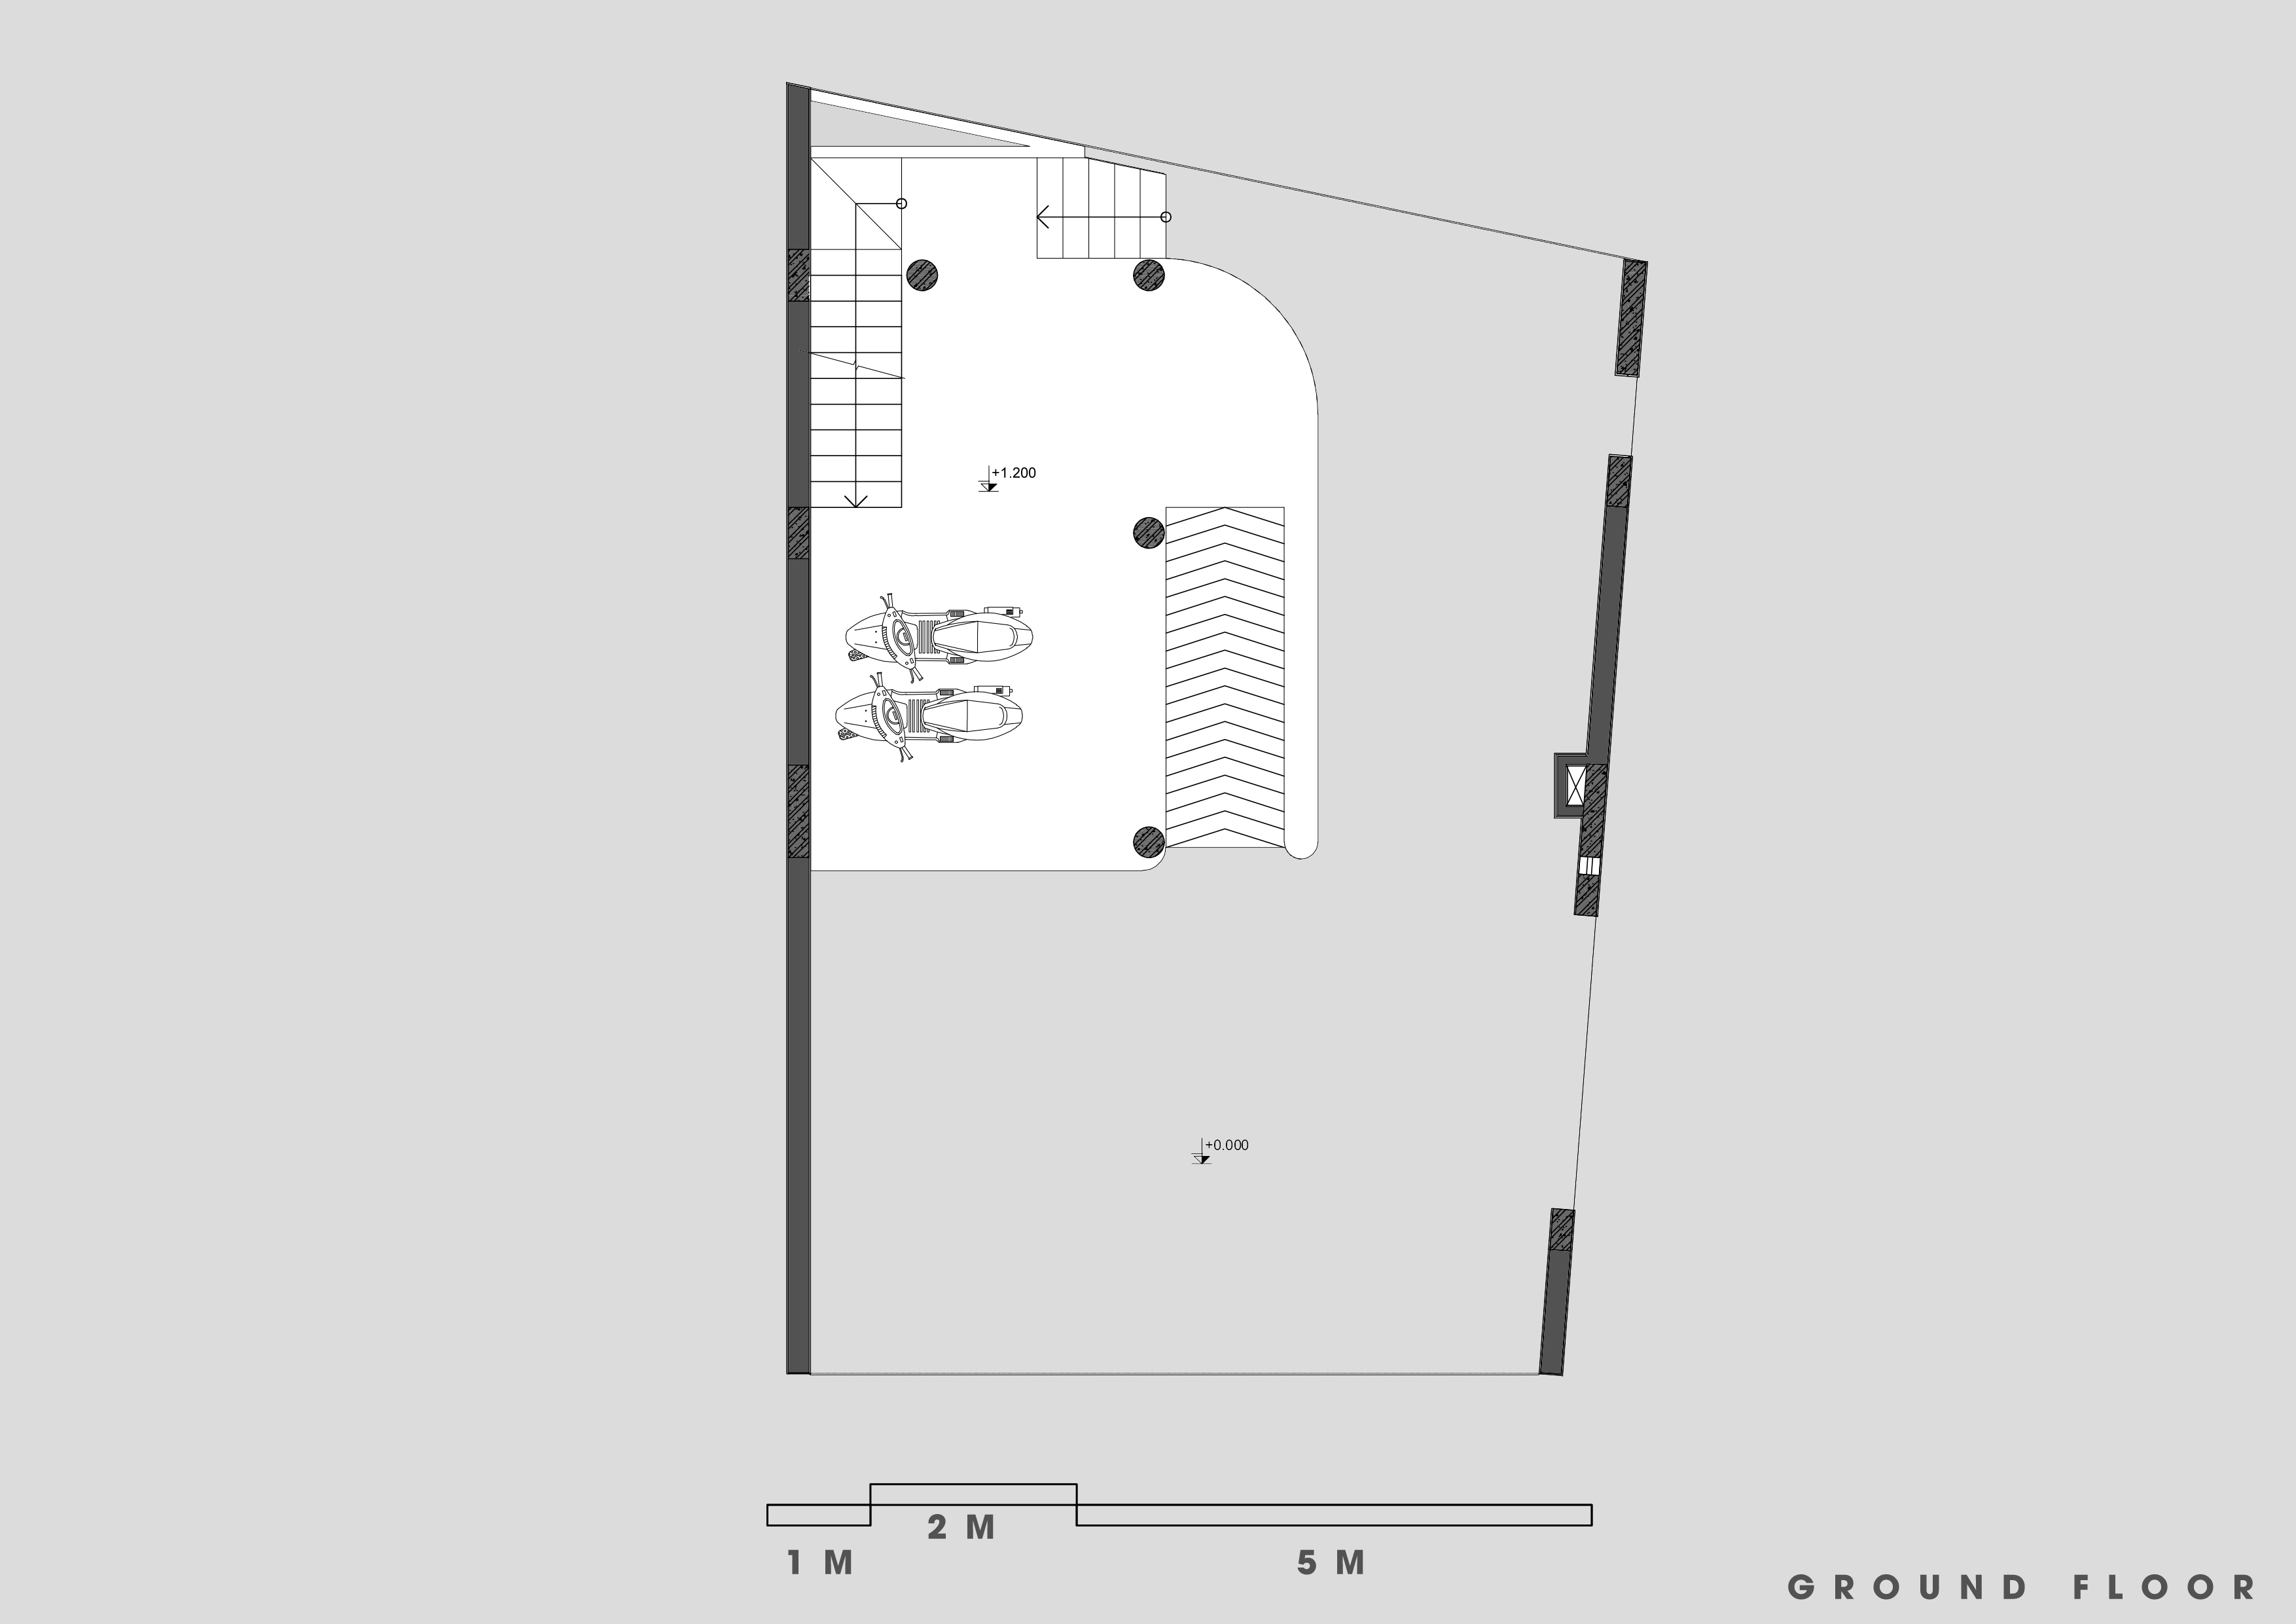 Ground floor plan, source Hinzstudio